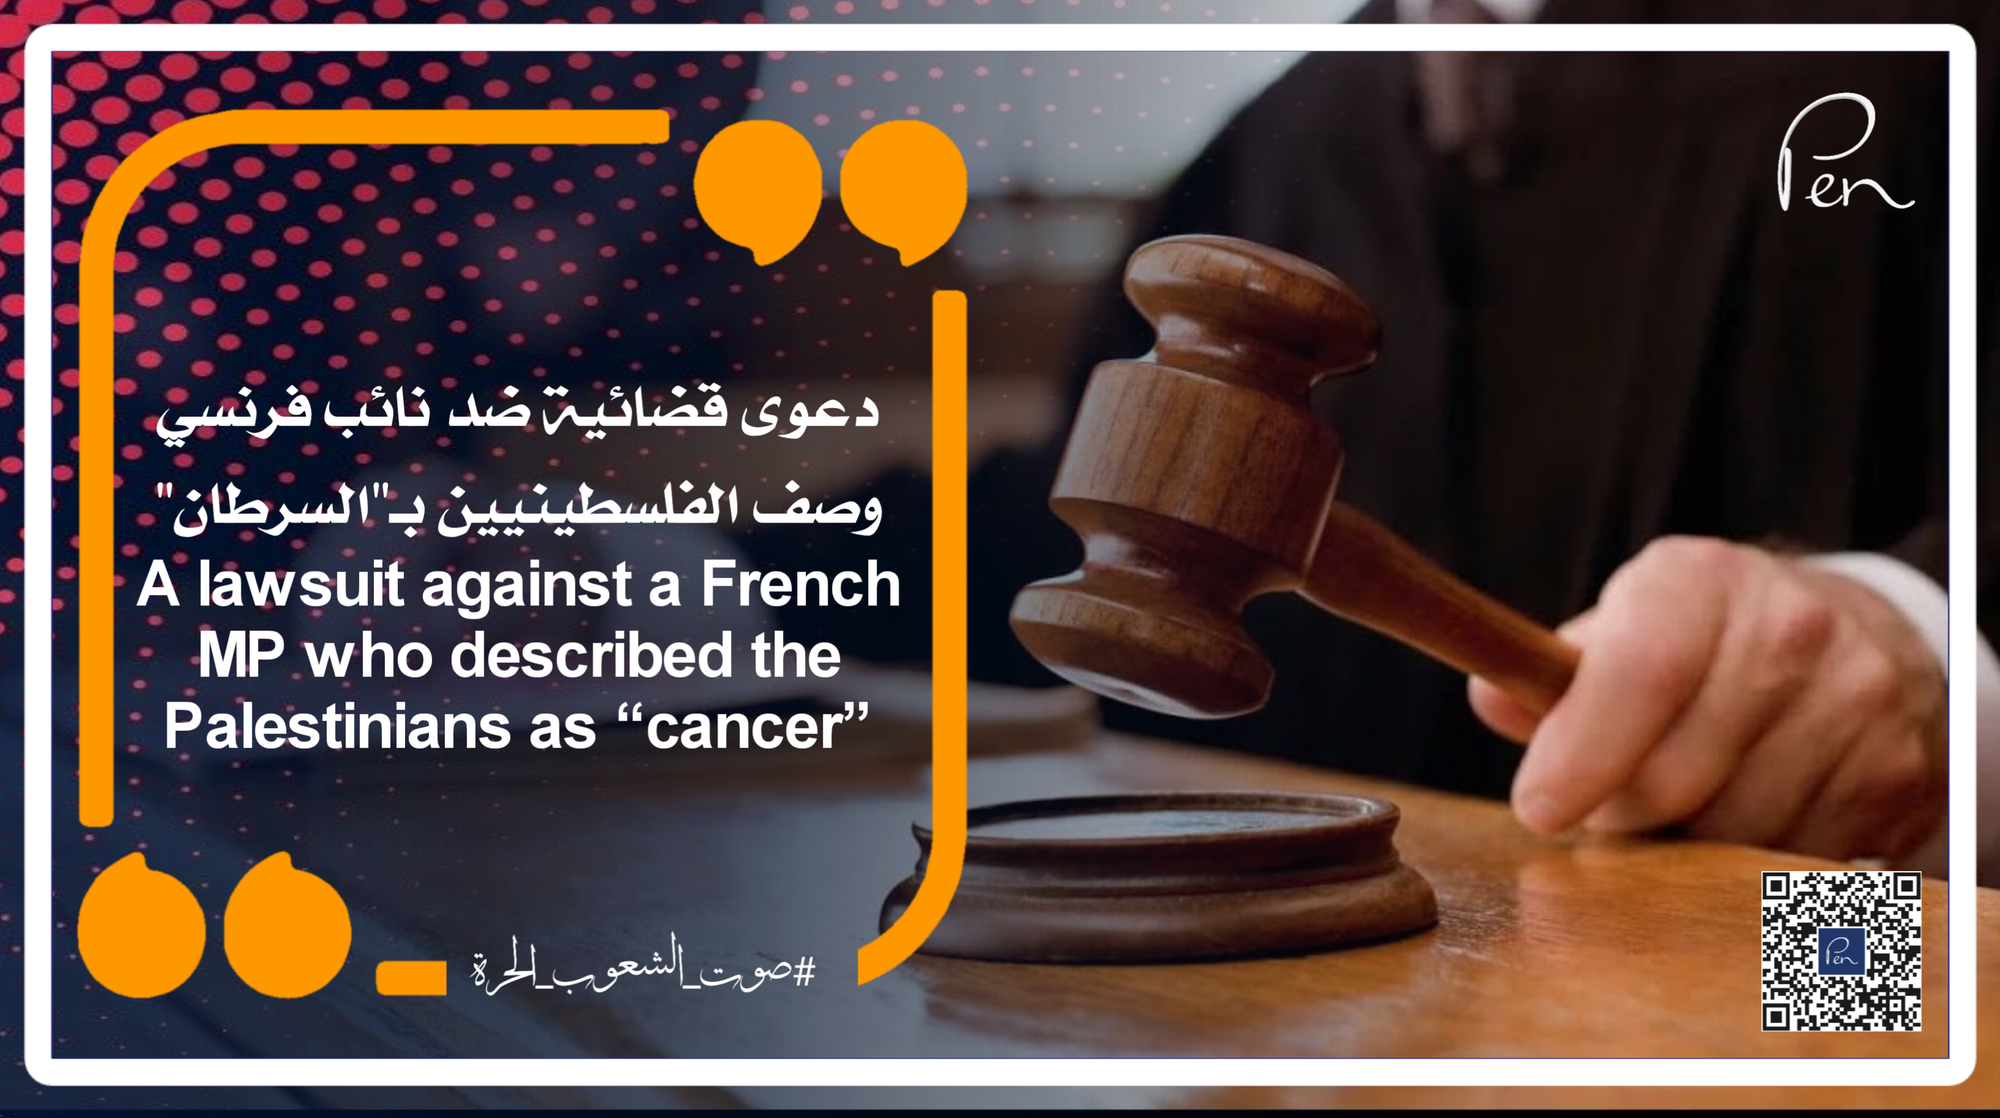 دعوى قضائية ضد نائب فرنسي وصف الفلسطينيين بـ"السرطان"